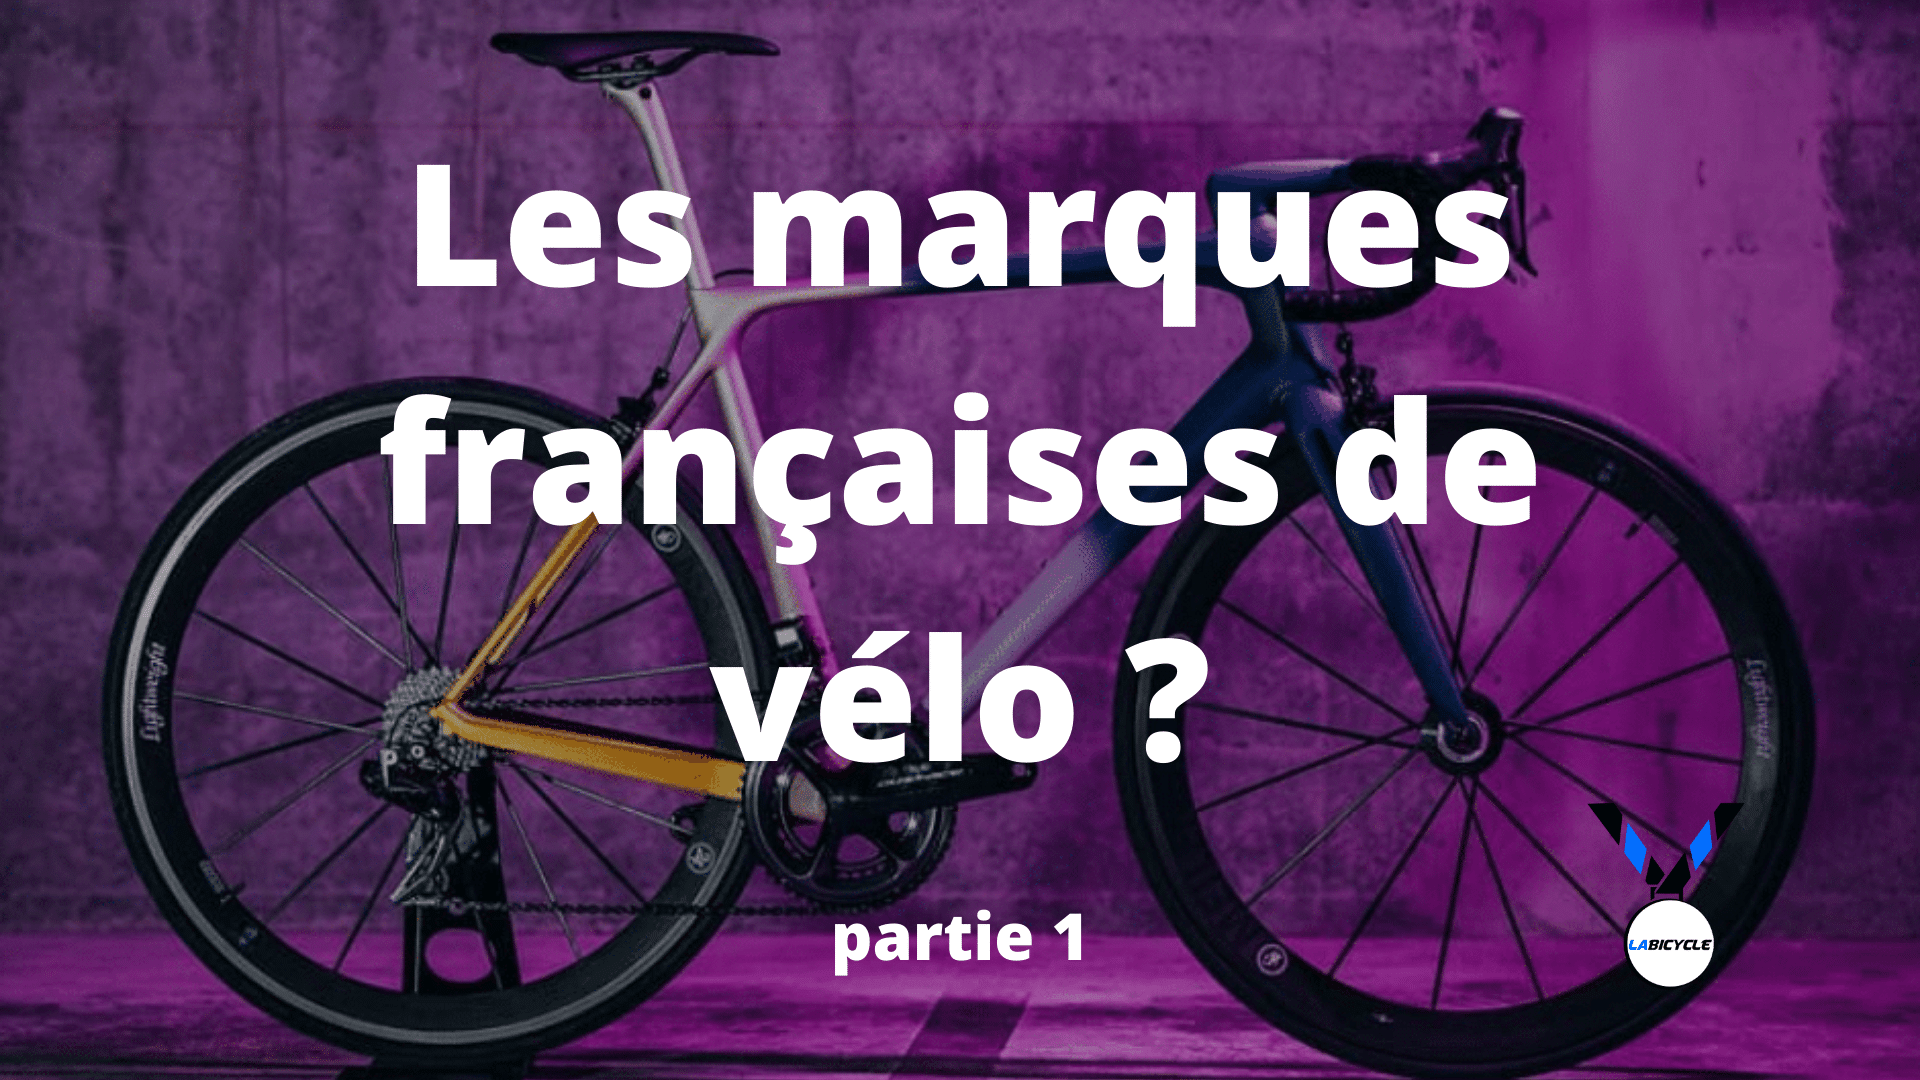 Les marques françaises de vélo : ne passez pas à côté !